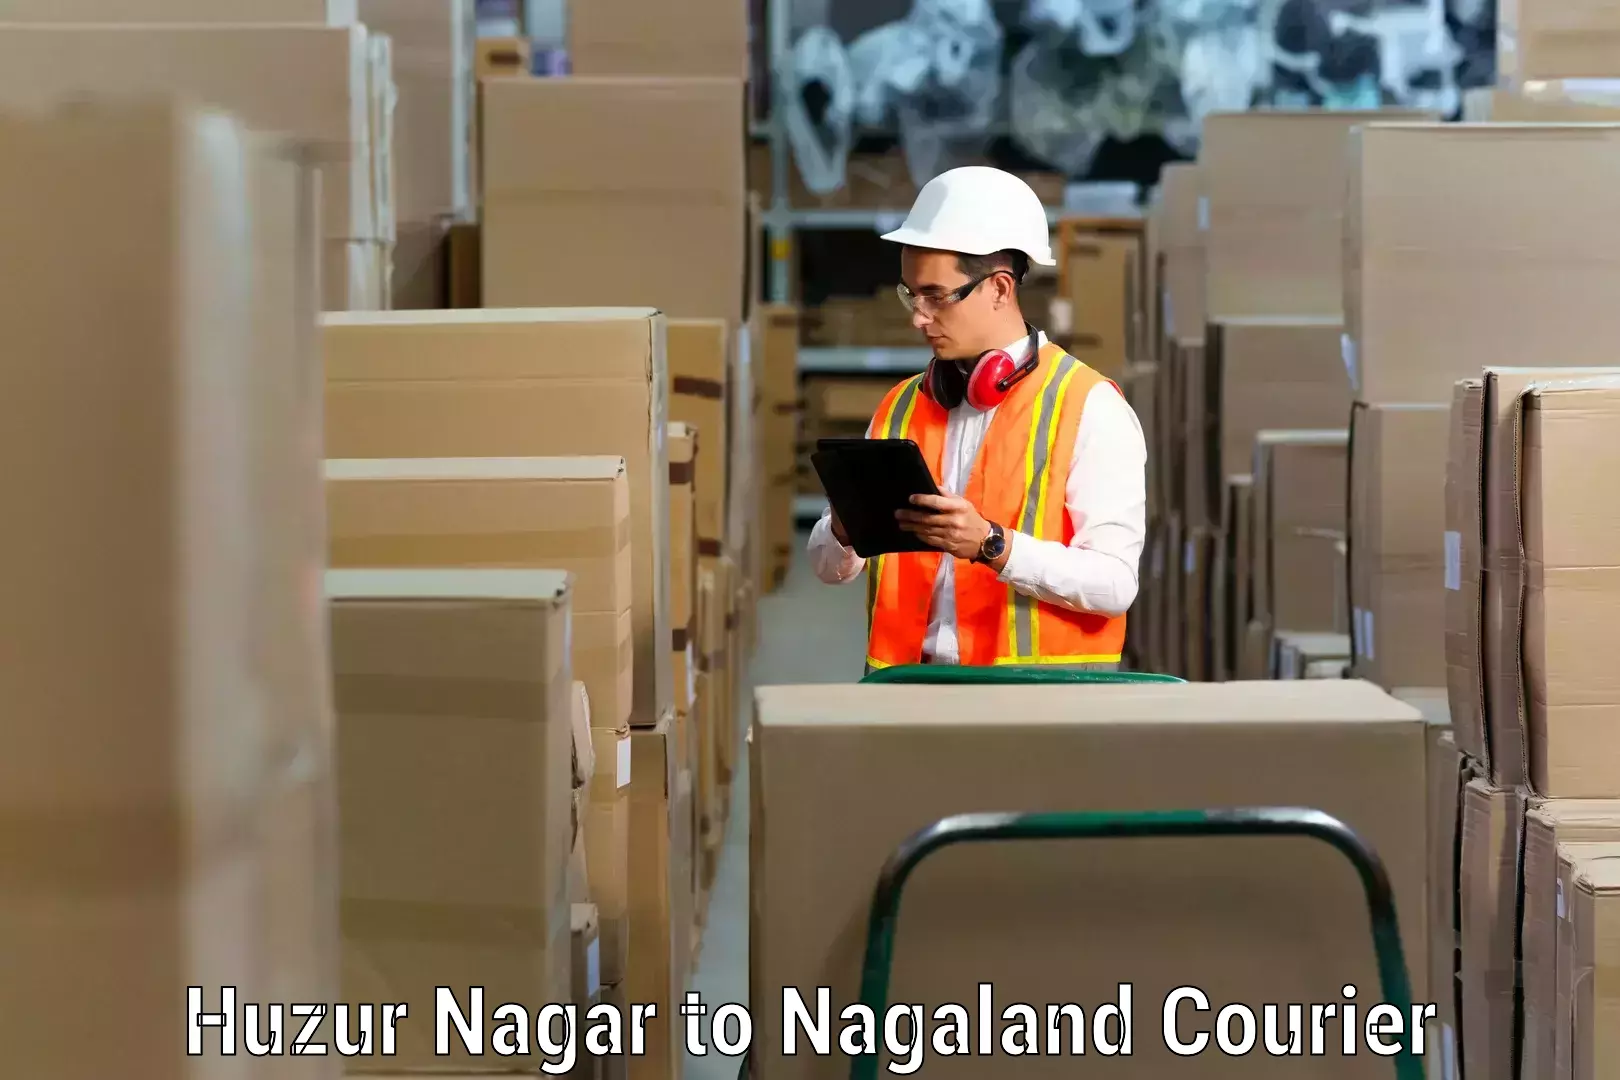 Stress-free moving Huzur Nagar to Nagaland